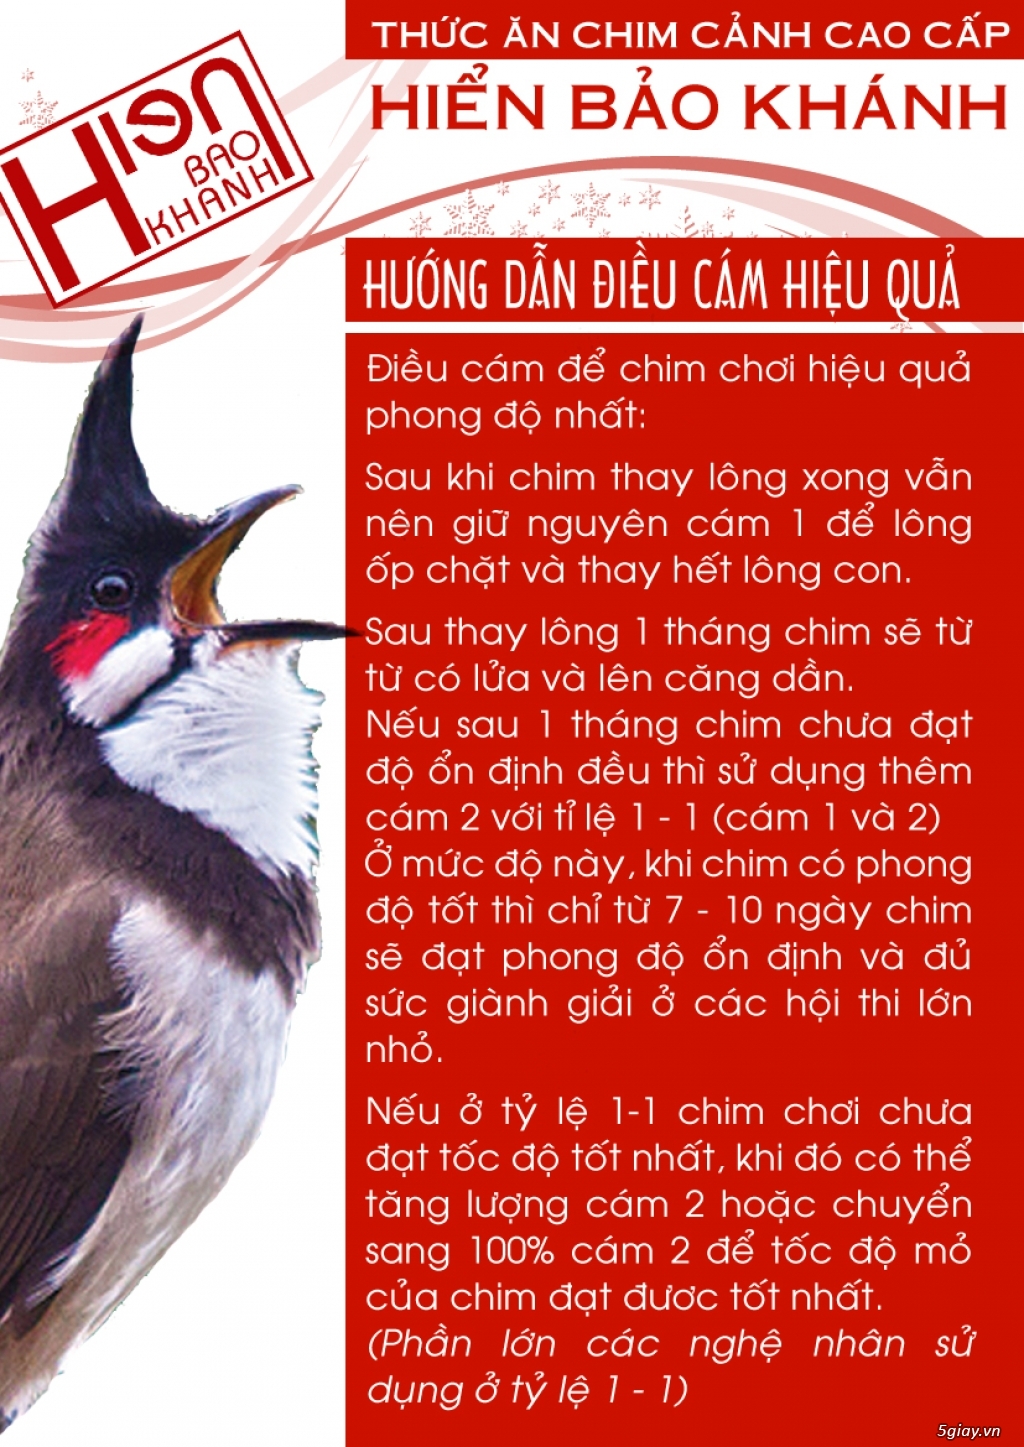 Cám chim Hiển Bảo Khánh : Phân phối nhận làm đại lý với giá hấp dẫn - 2